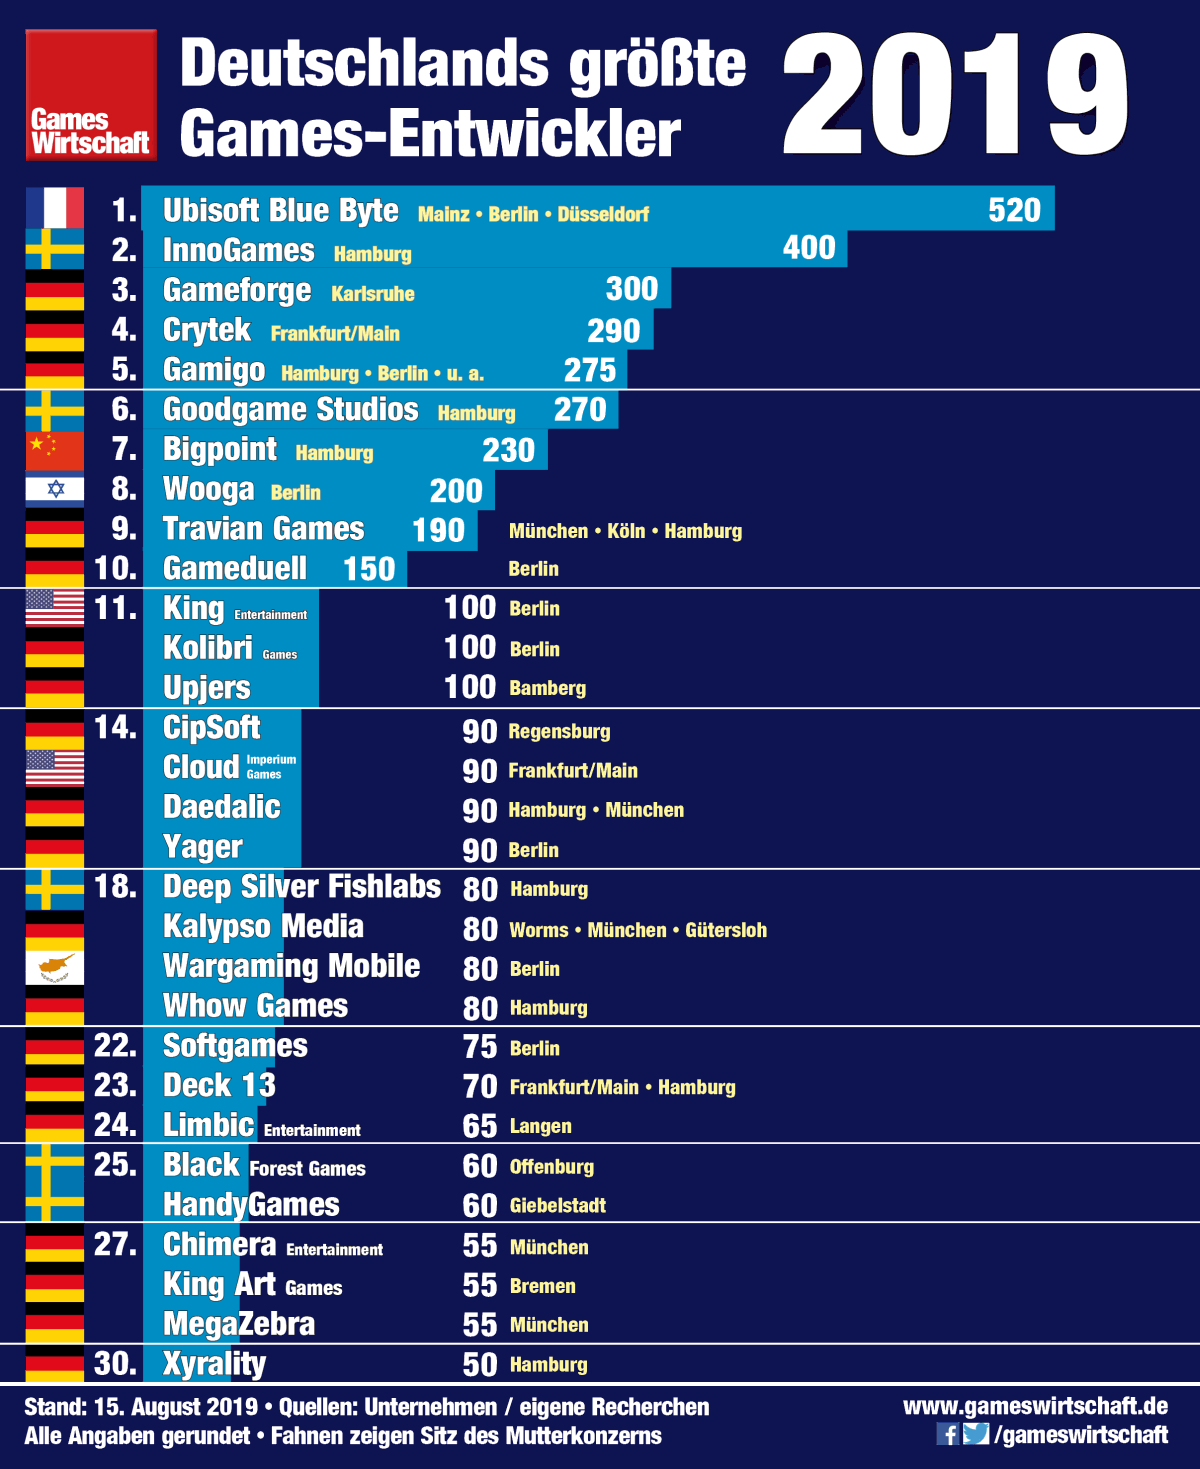 Das sind die 30 größten Spiele-Entwickler und Studios in Deutschland (Stand: 15. August 2019)